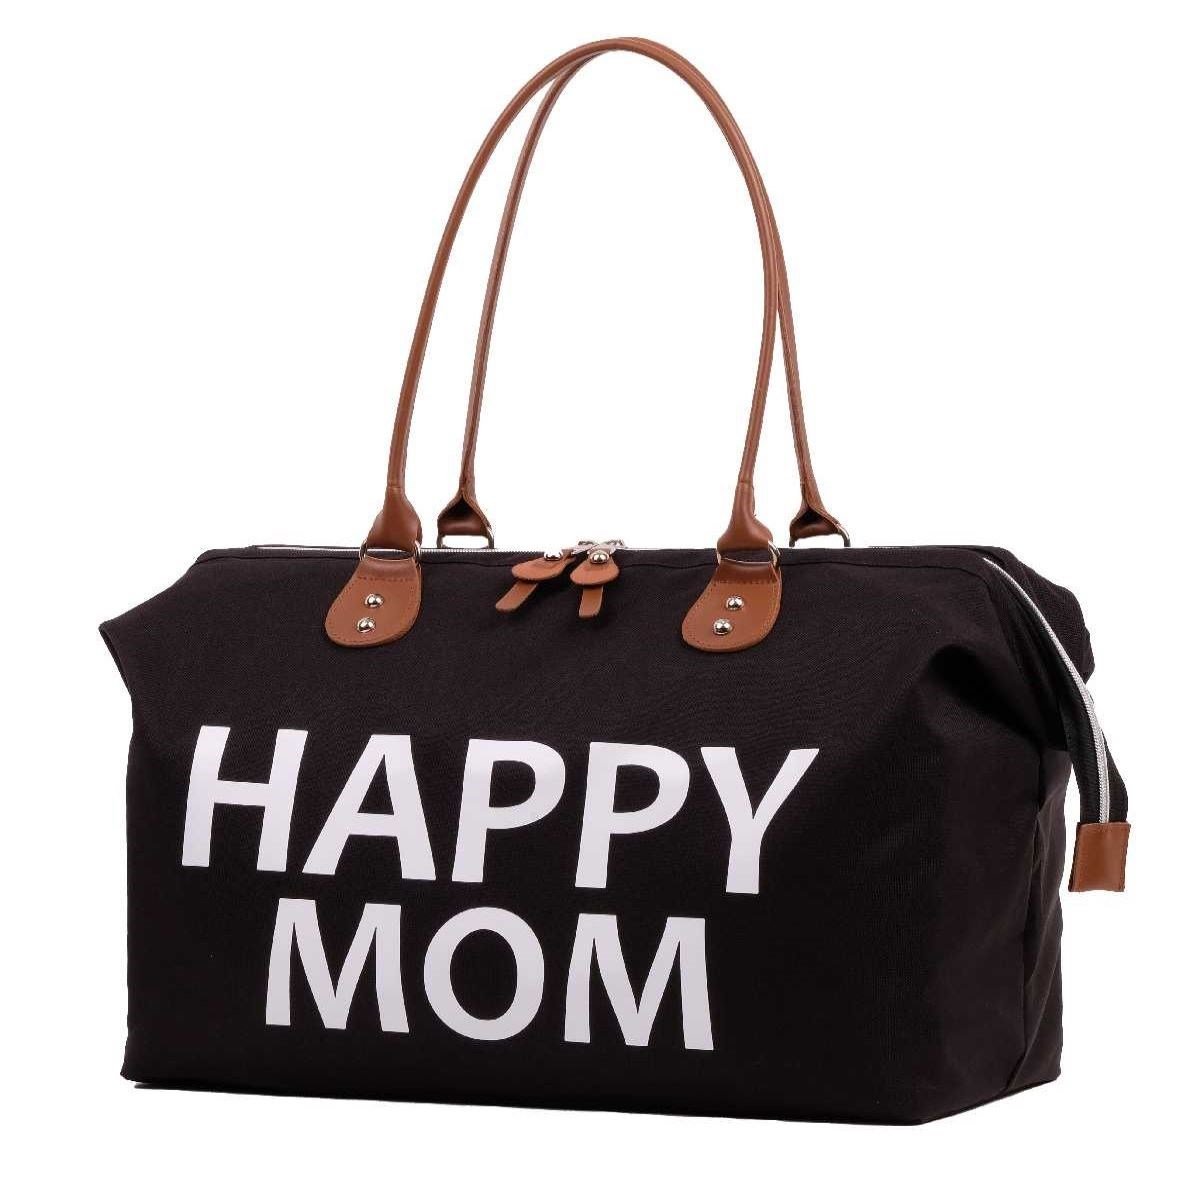 HappyMom - HappyMom Bebek Bakım Çantası Siyah (Mommy Bag) - 289,90 TL